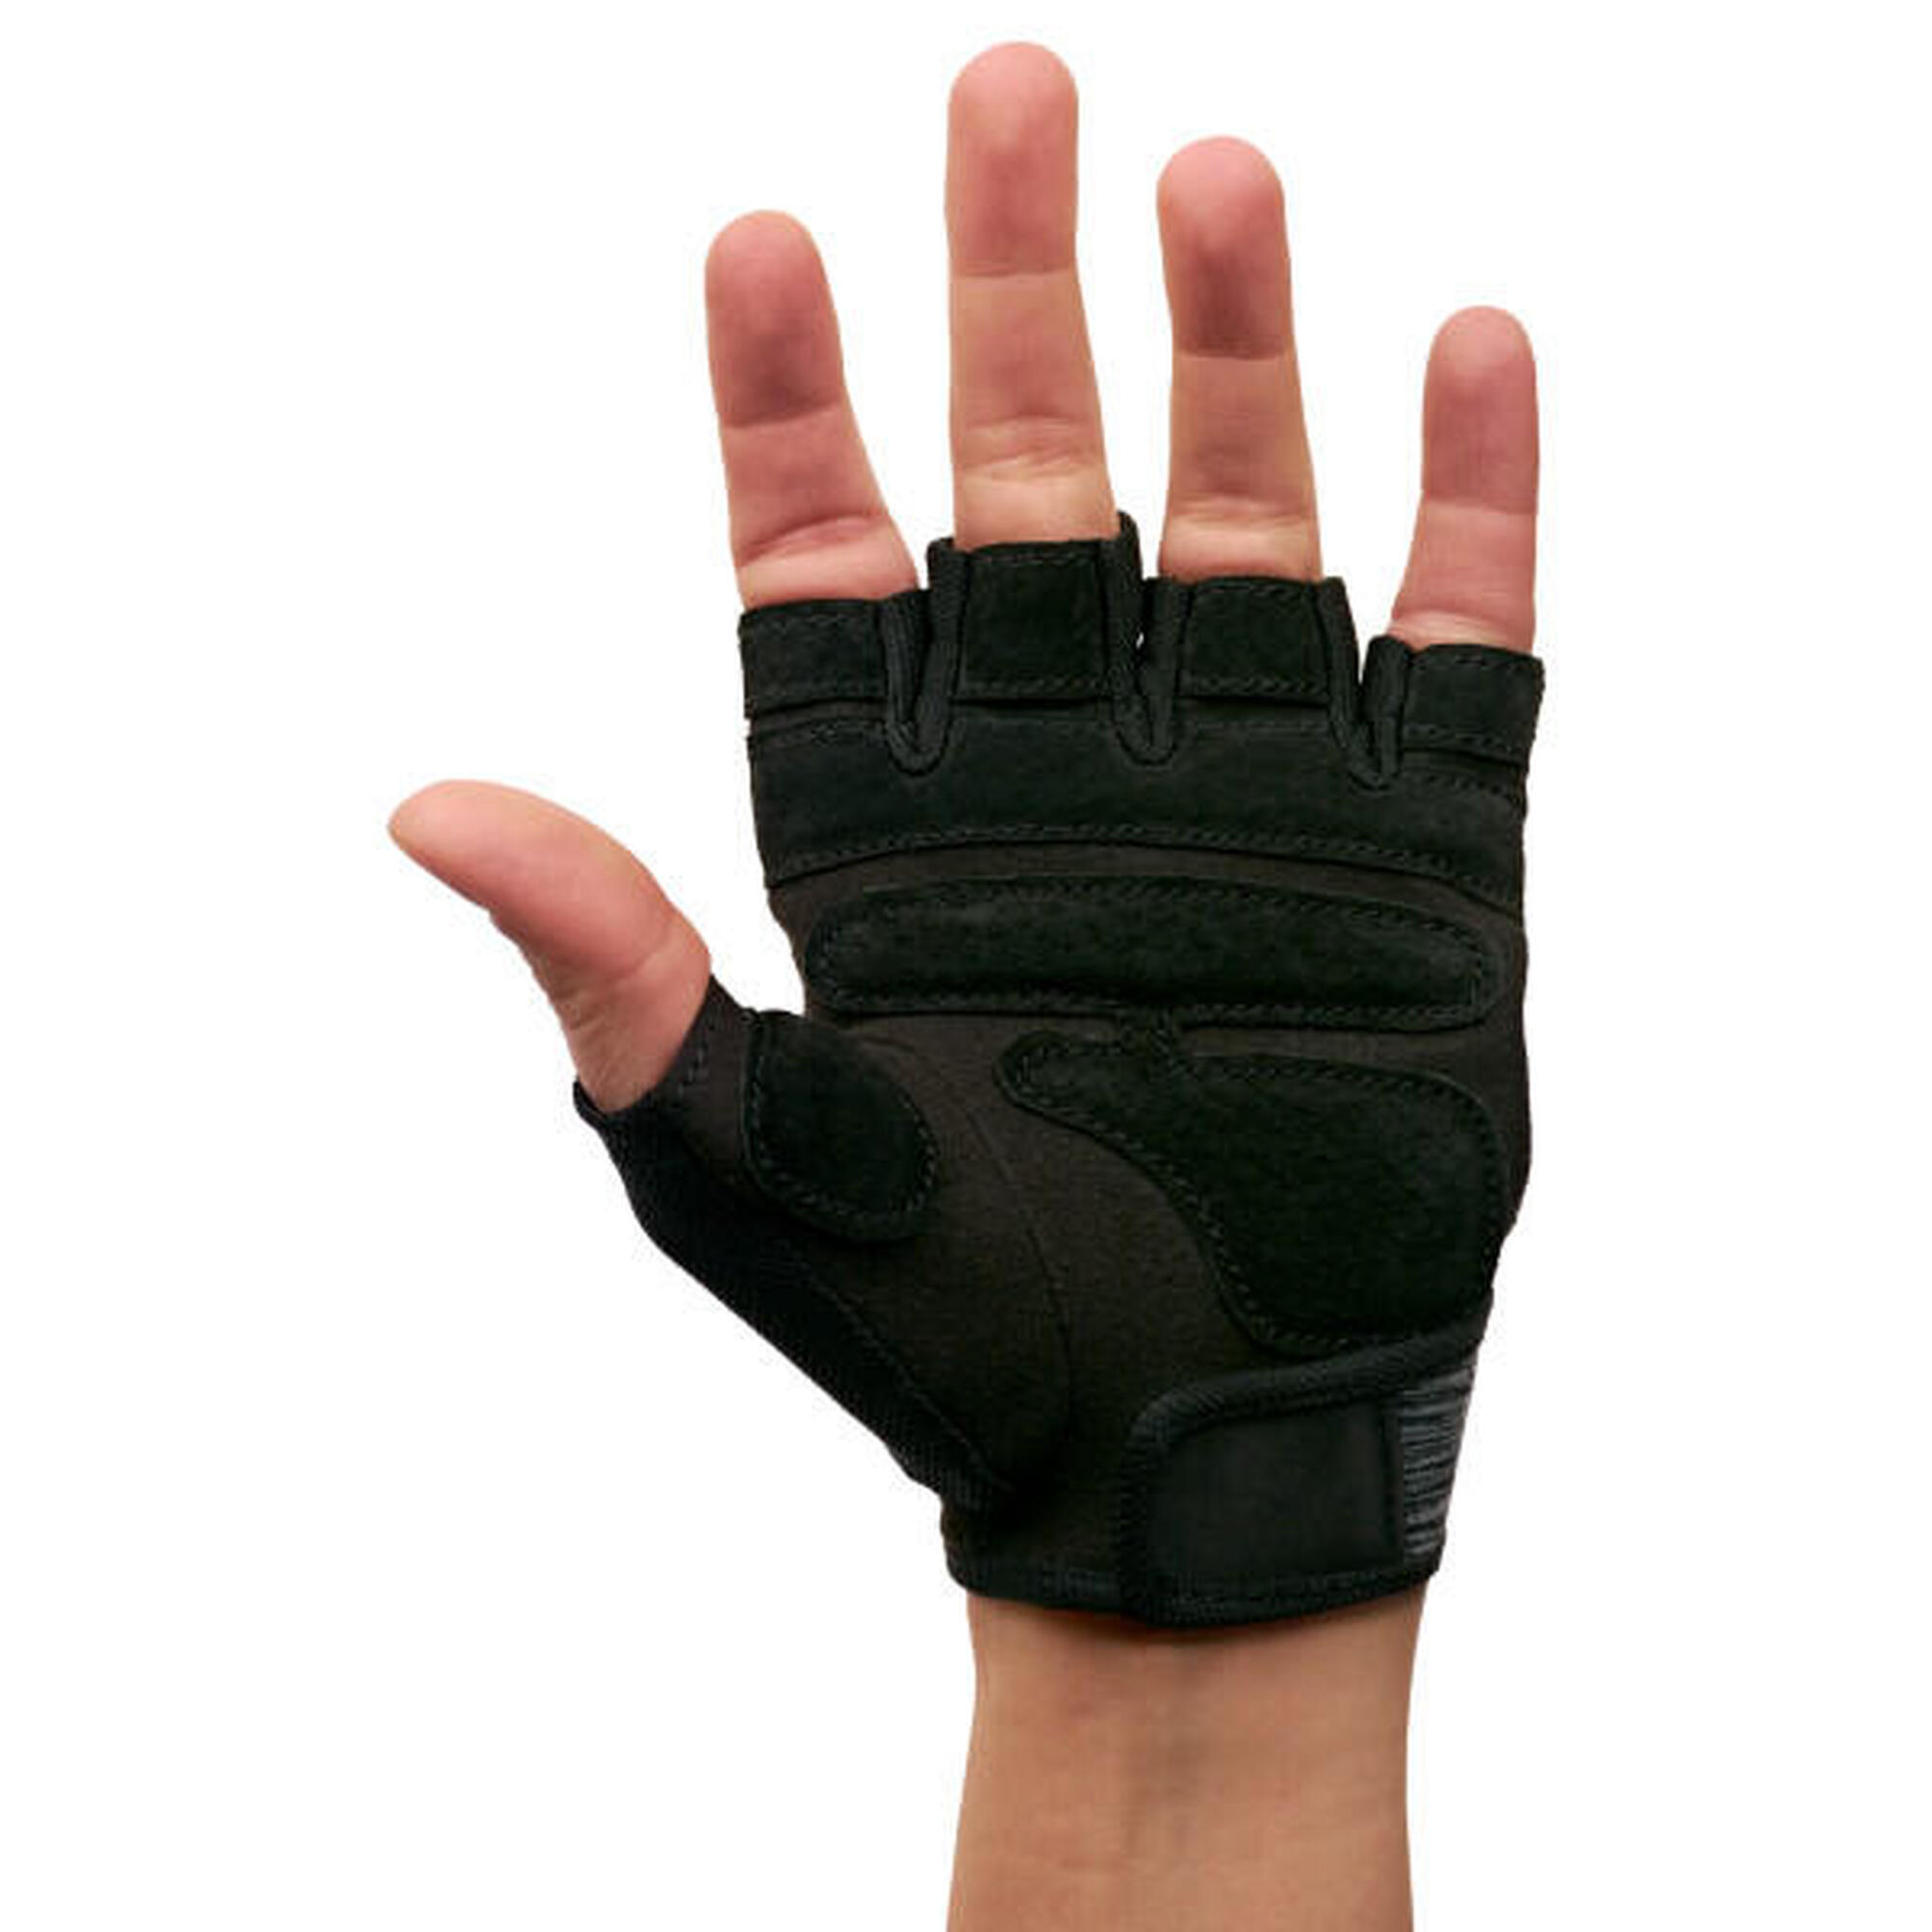 Harbinger Handschuhe für Frauen mit Polstern für Komfort und Schutz.